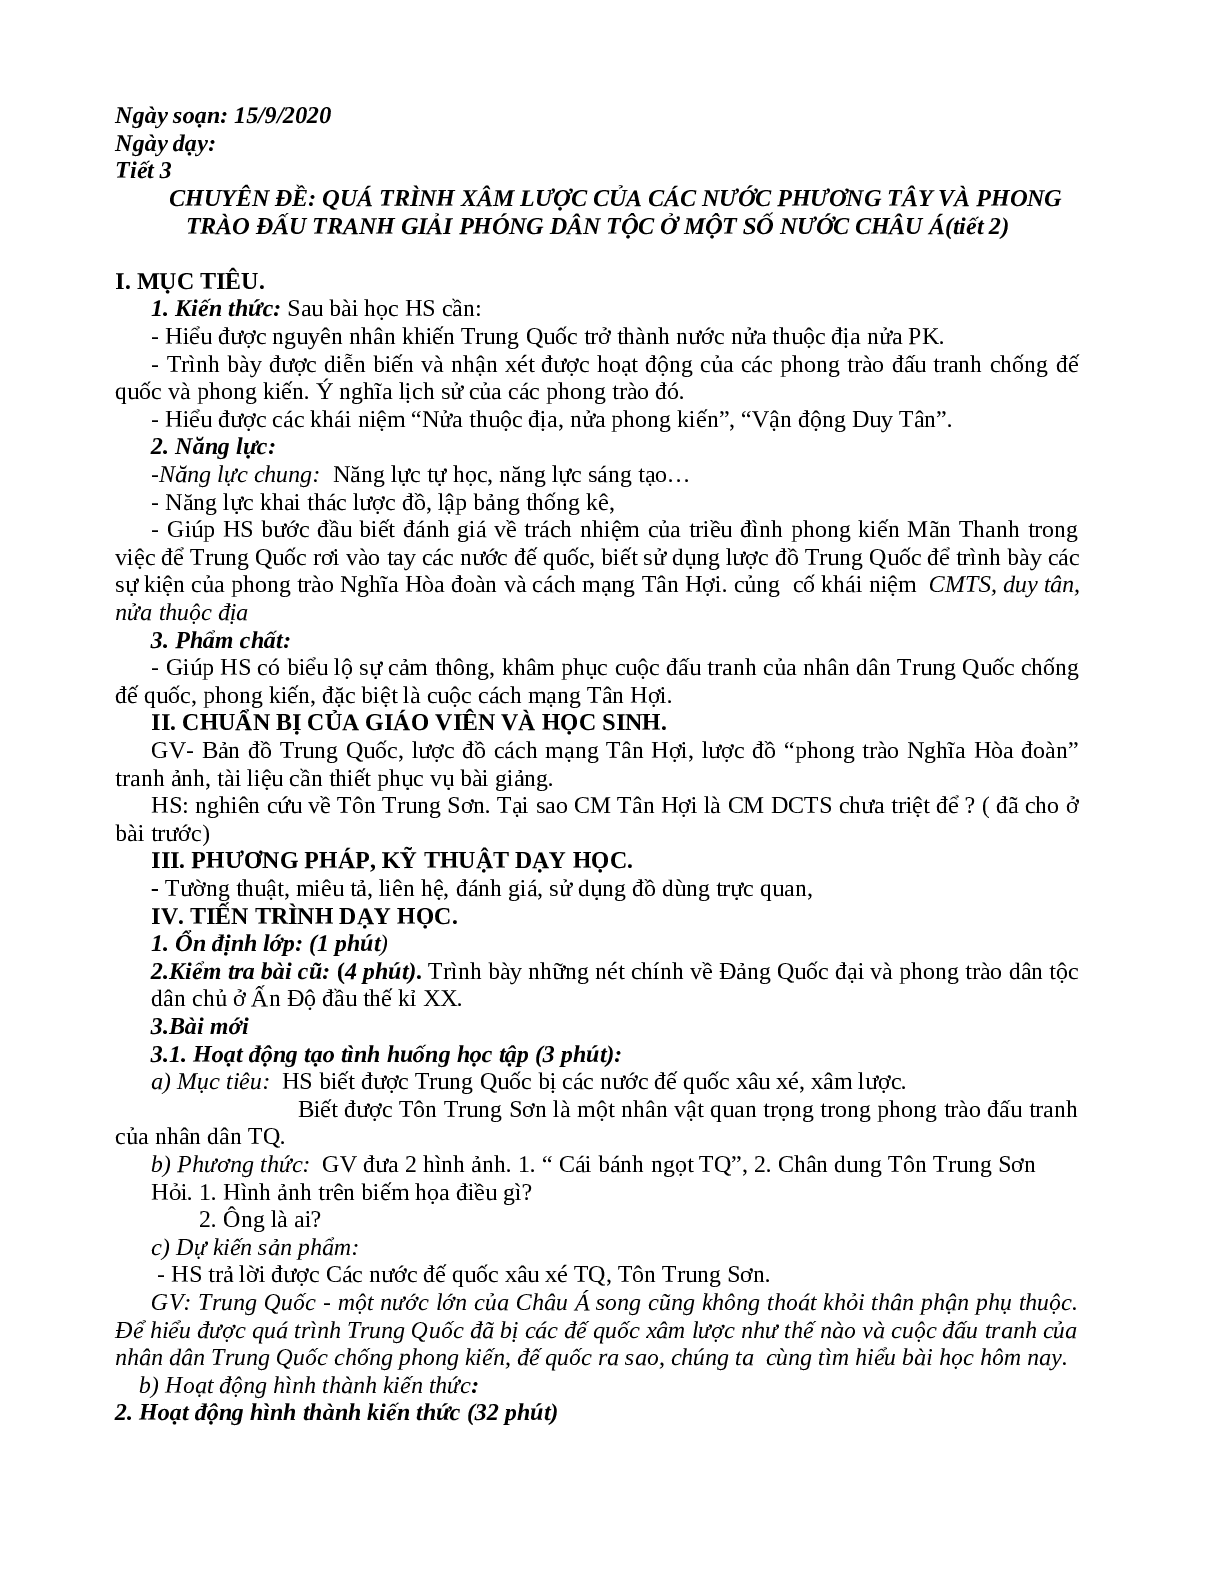 Giáo án Lịch Sử 11 mới nhất (trang 8)